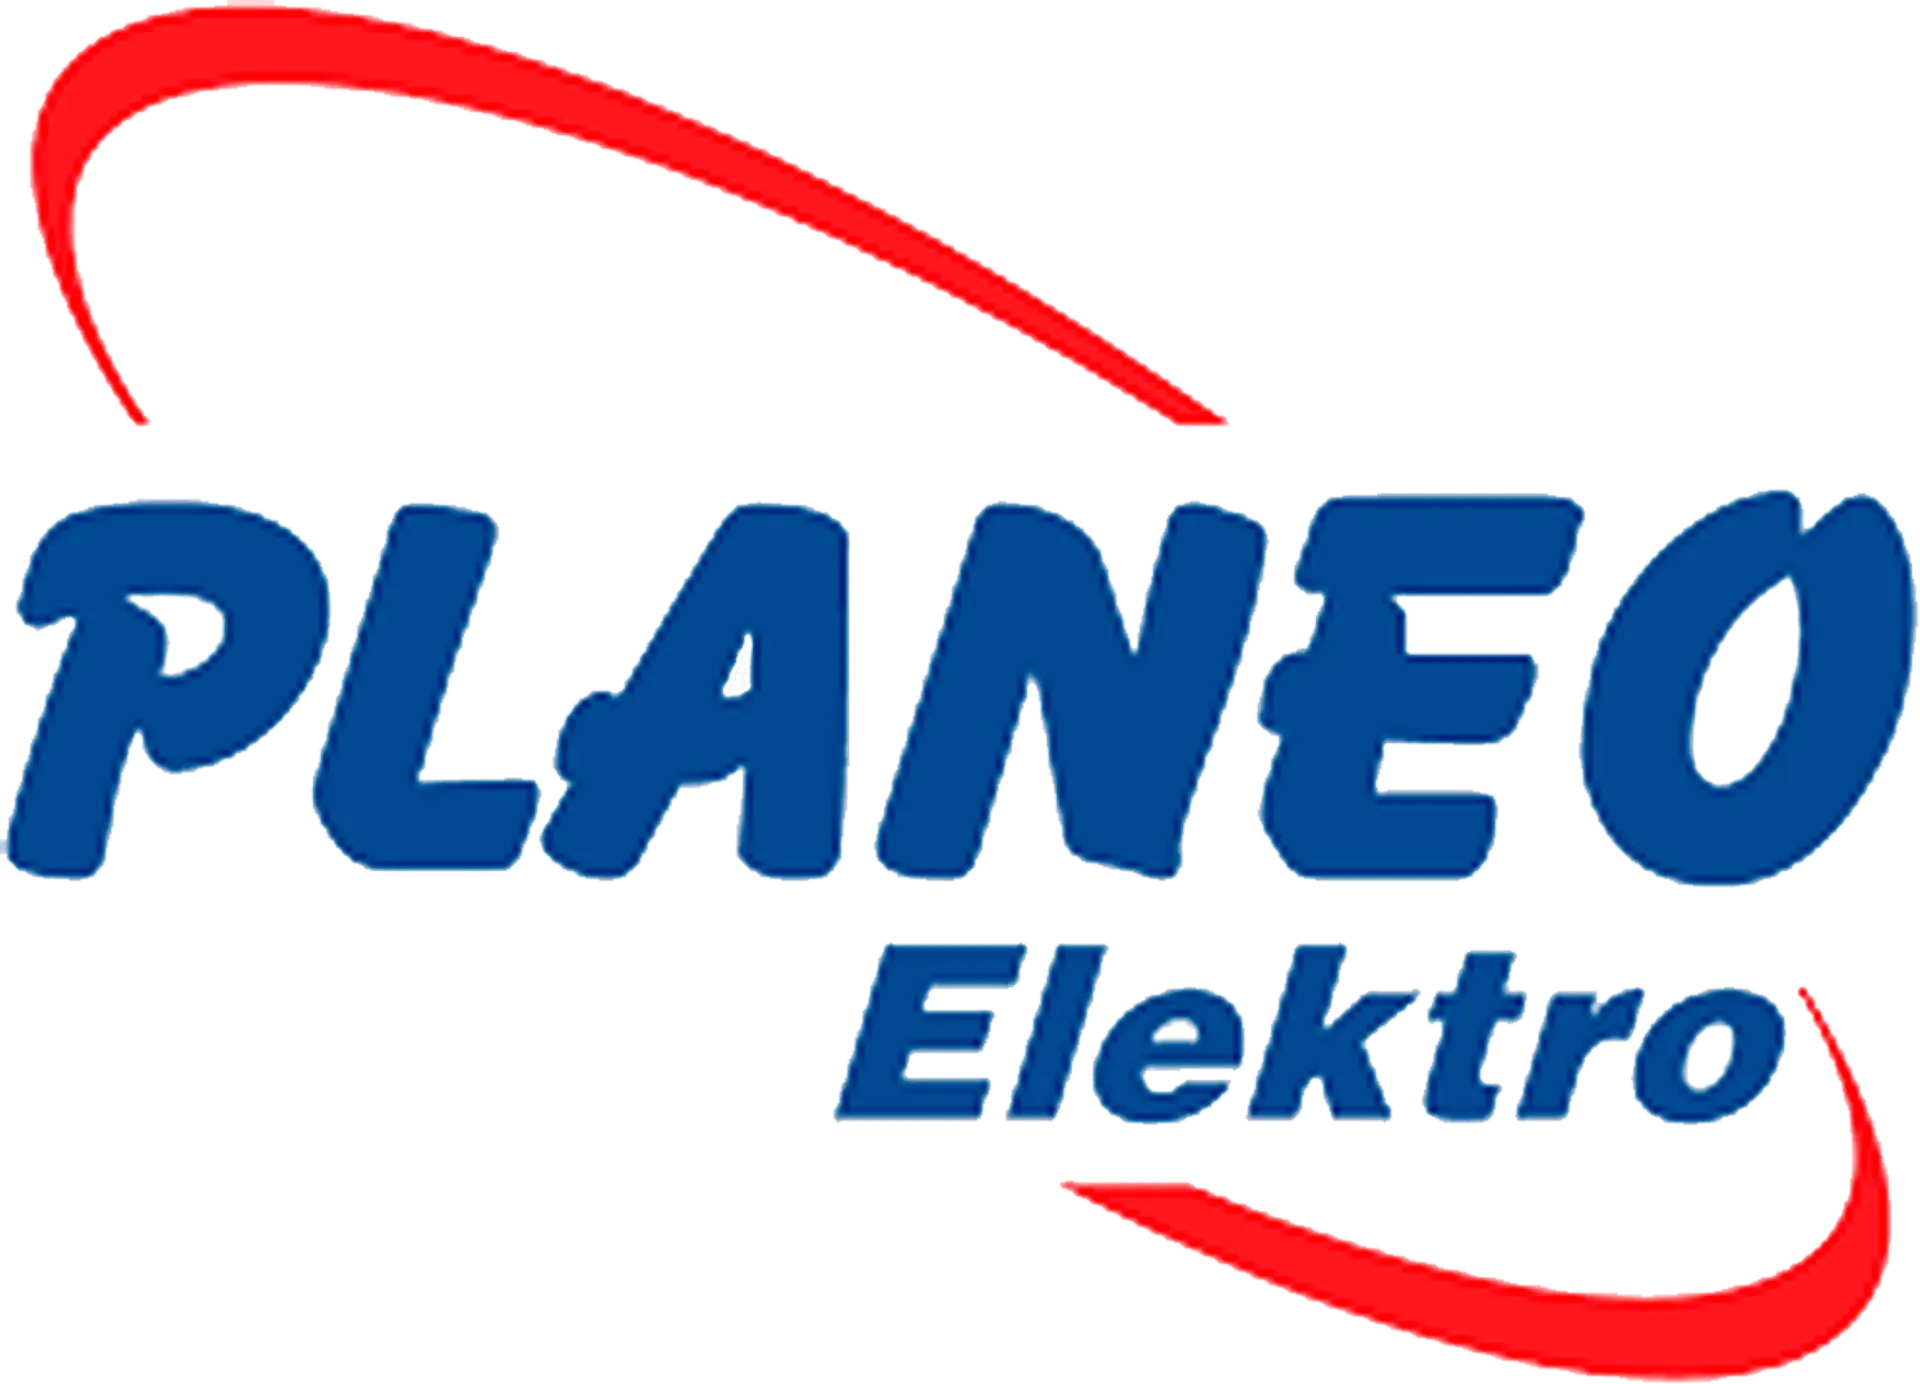 PLANEO ELEKTRO logo